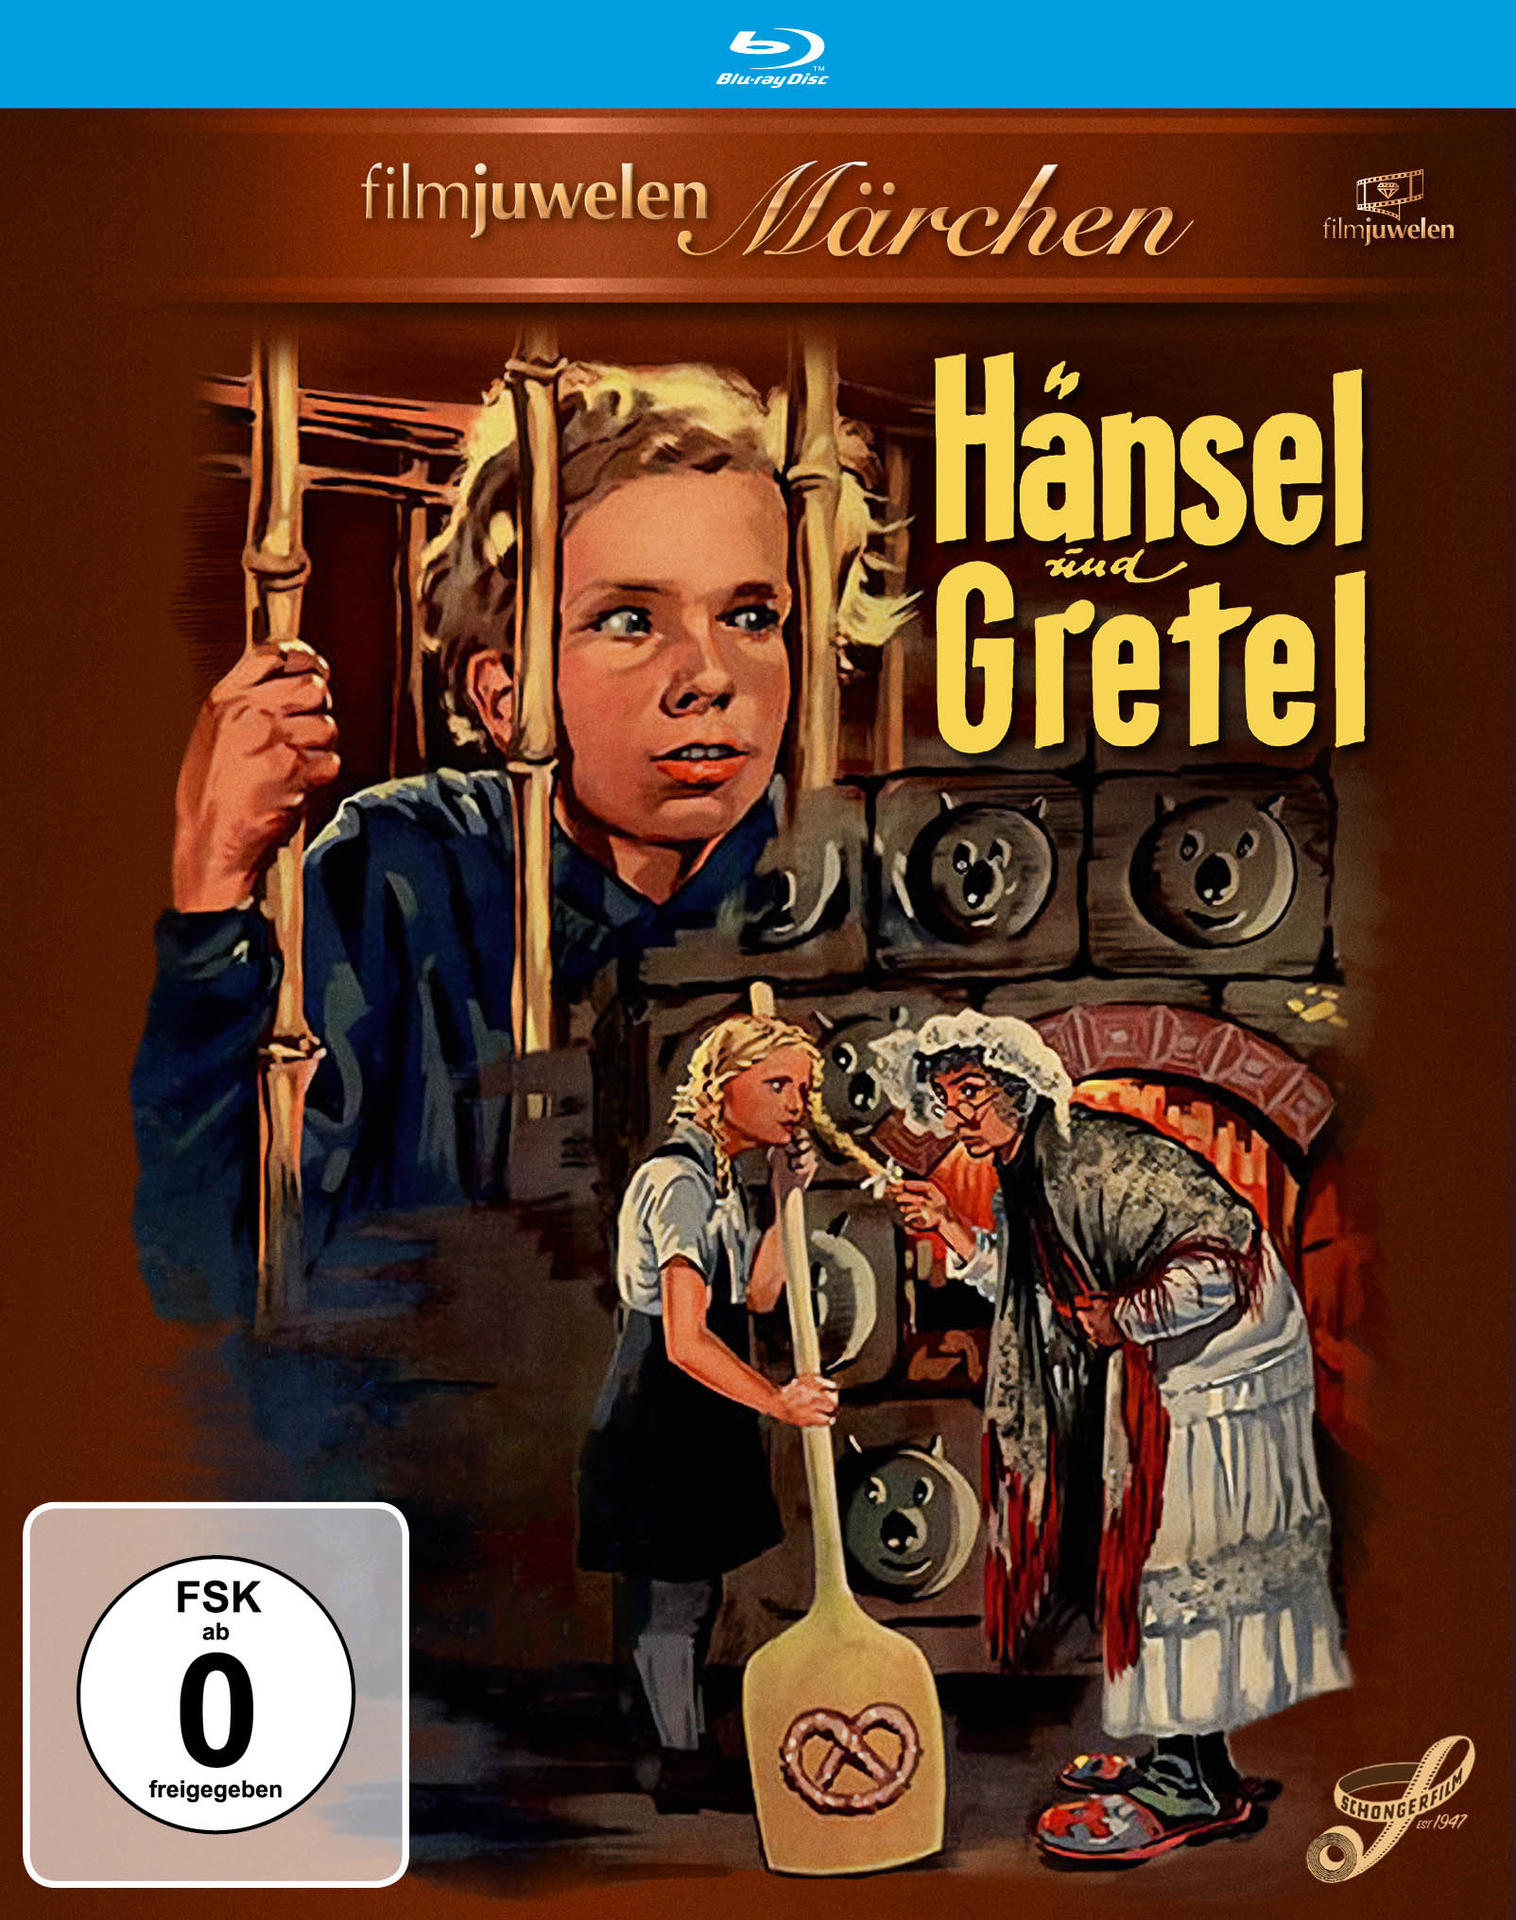 Blu-ray und Hänsel Gretel